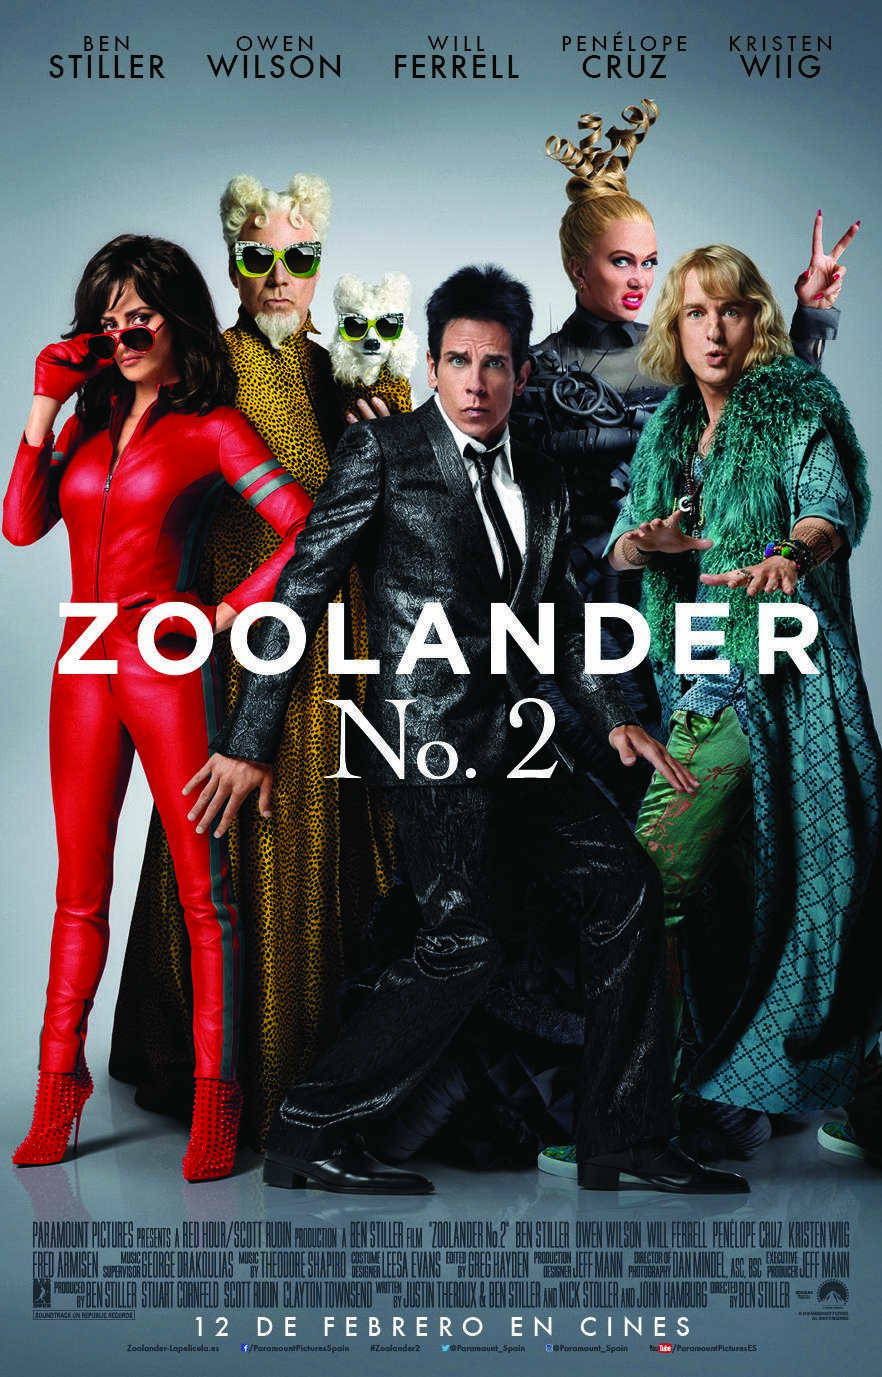 Zoolander 2 wallpaper, Movie, HQ Zoolander 2 pictureK Wallpaper